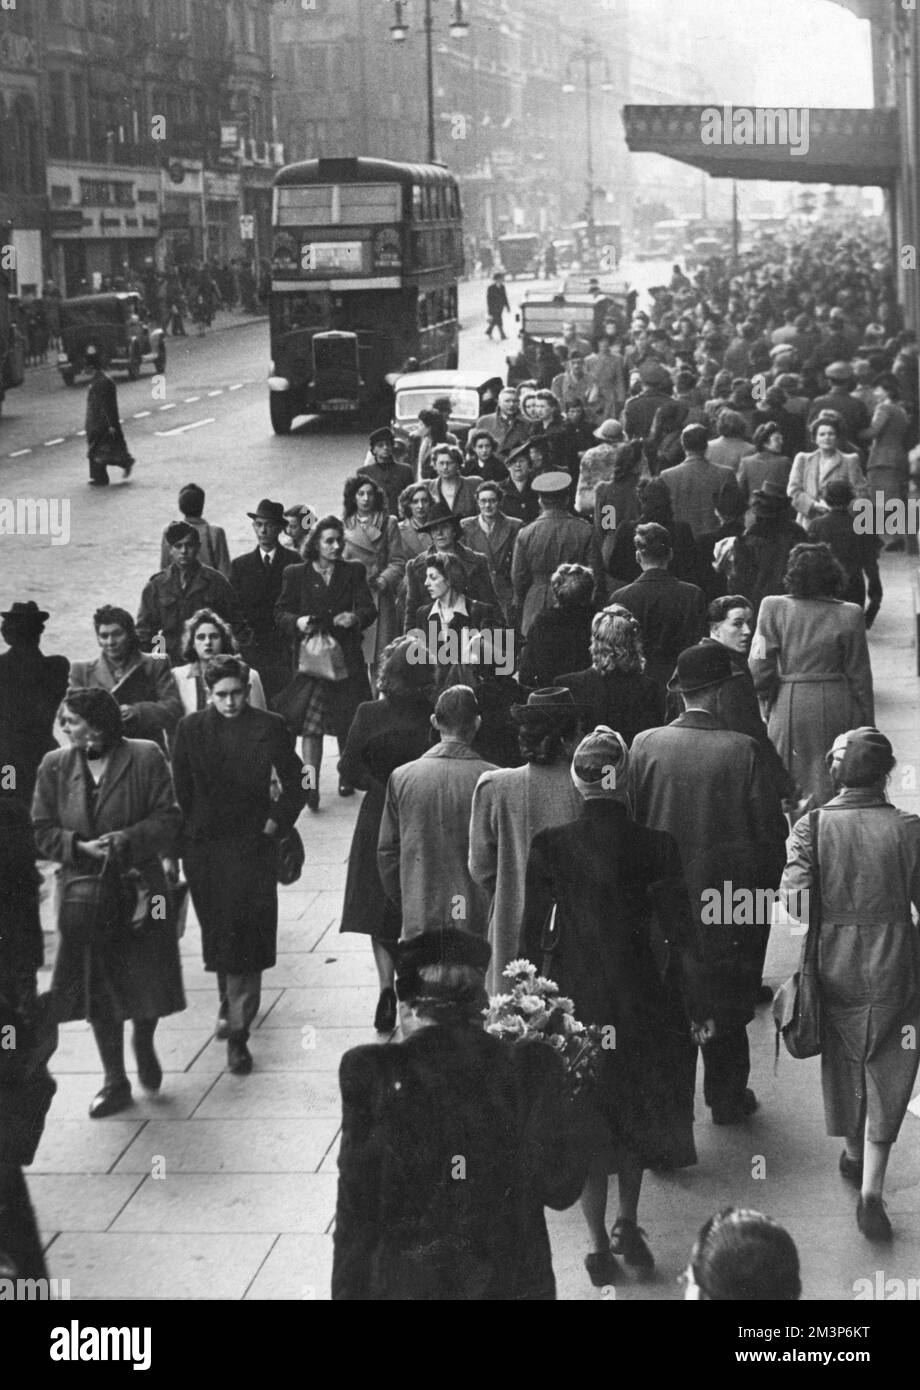 Im Dezember 1944 erwarten euch in der Oxford Street viele Besucher Weihnachtsgeschenke. Der Eingang zum Kaufhaus Selfridges ist im Hintergrund zu sehen. Datum: 1944 Stockfoto